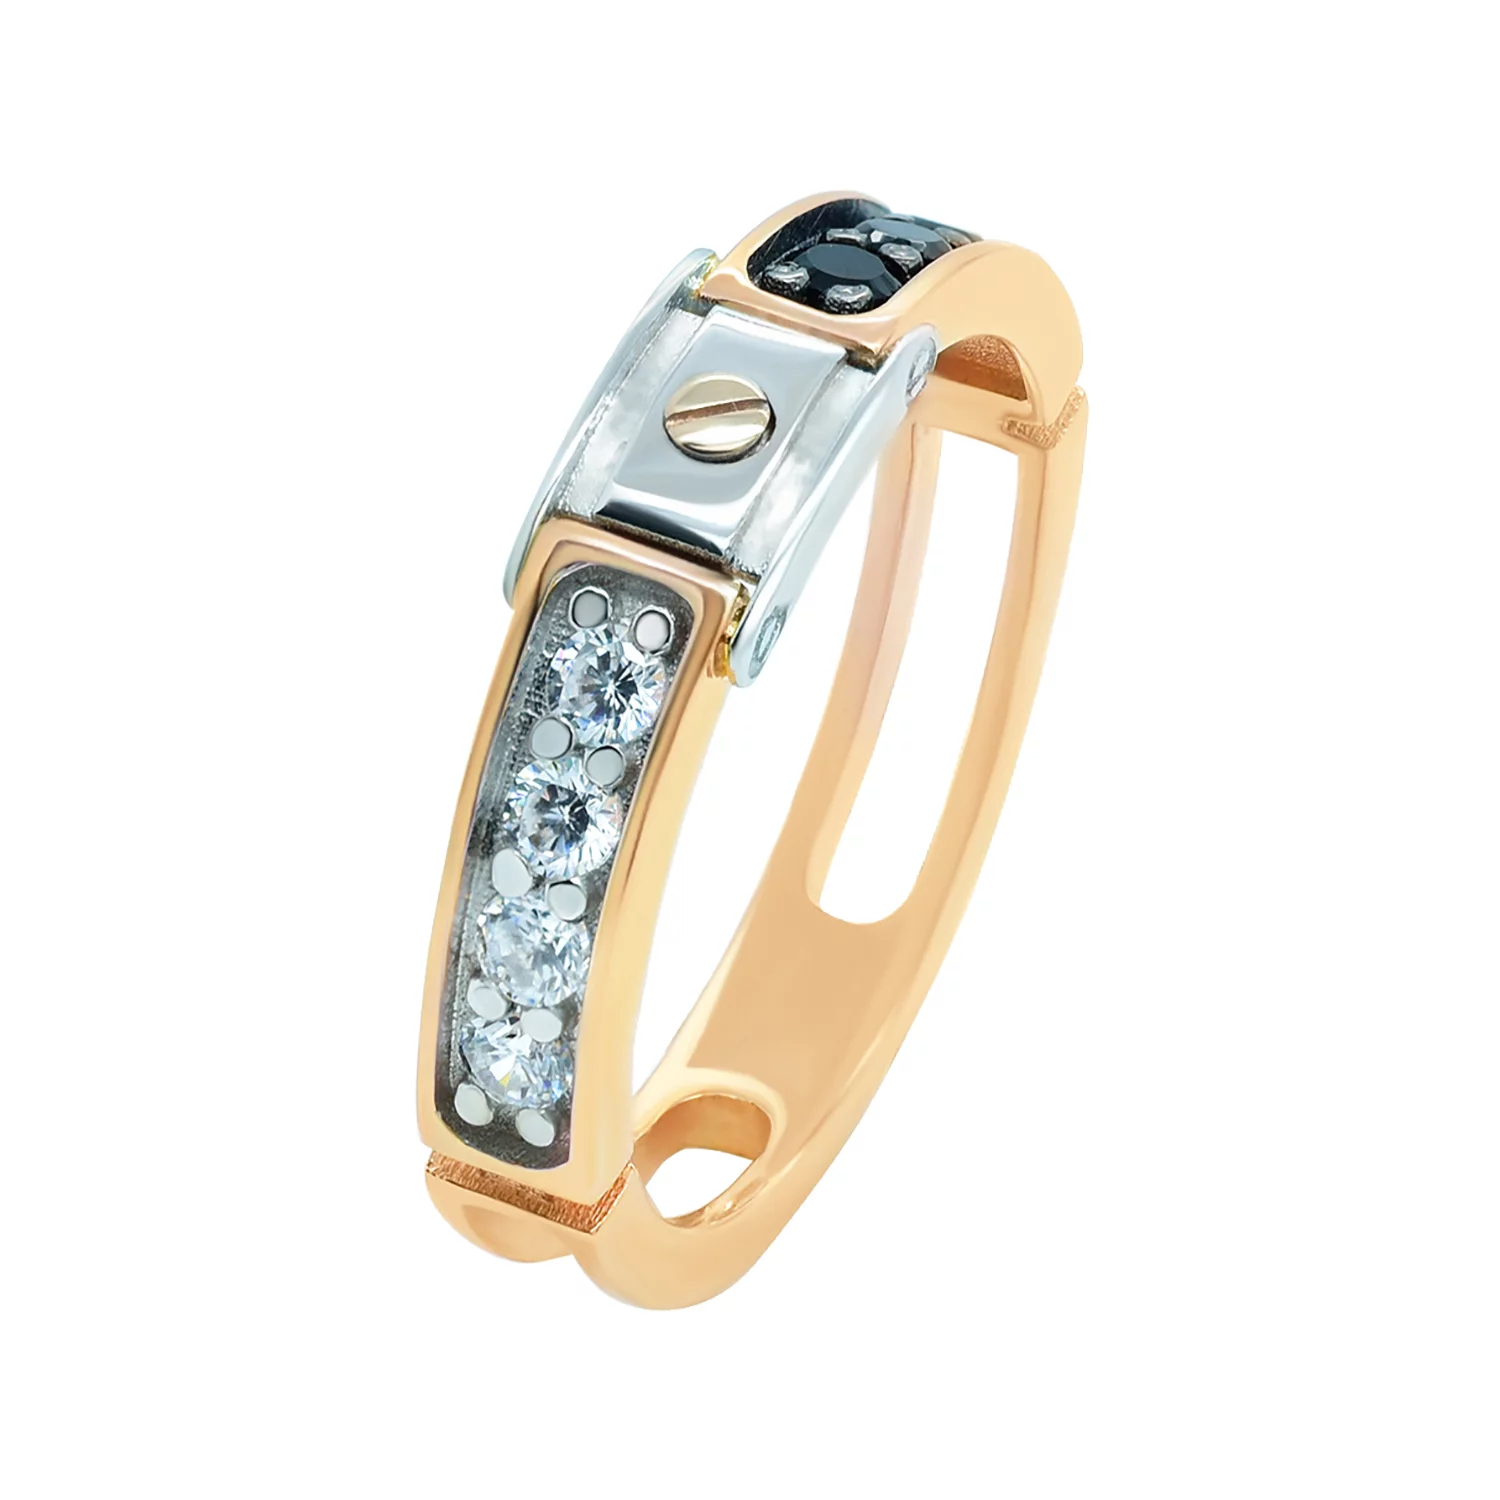 Перстень из комбинированного золота с фианитом. Артикул КП002: цена, отзывы, фото – купить в интернет-магазине AURUM